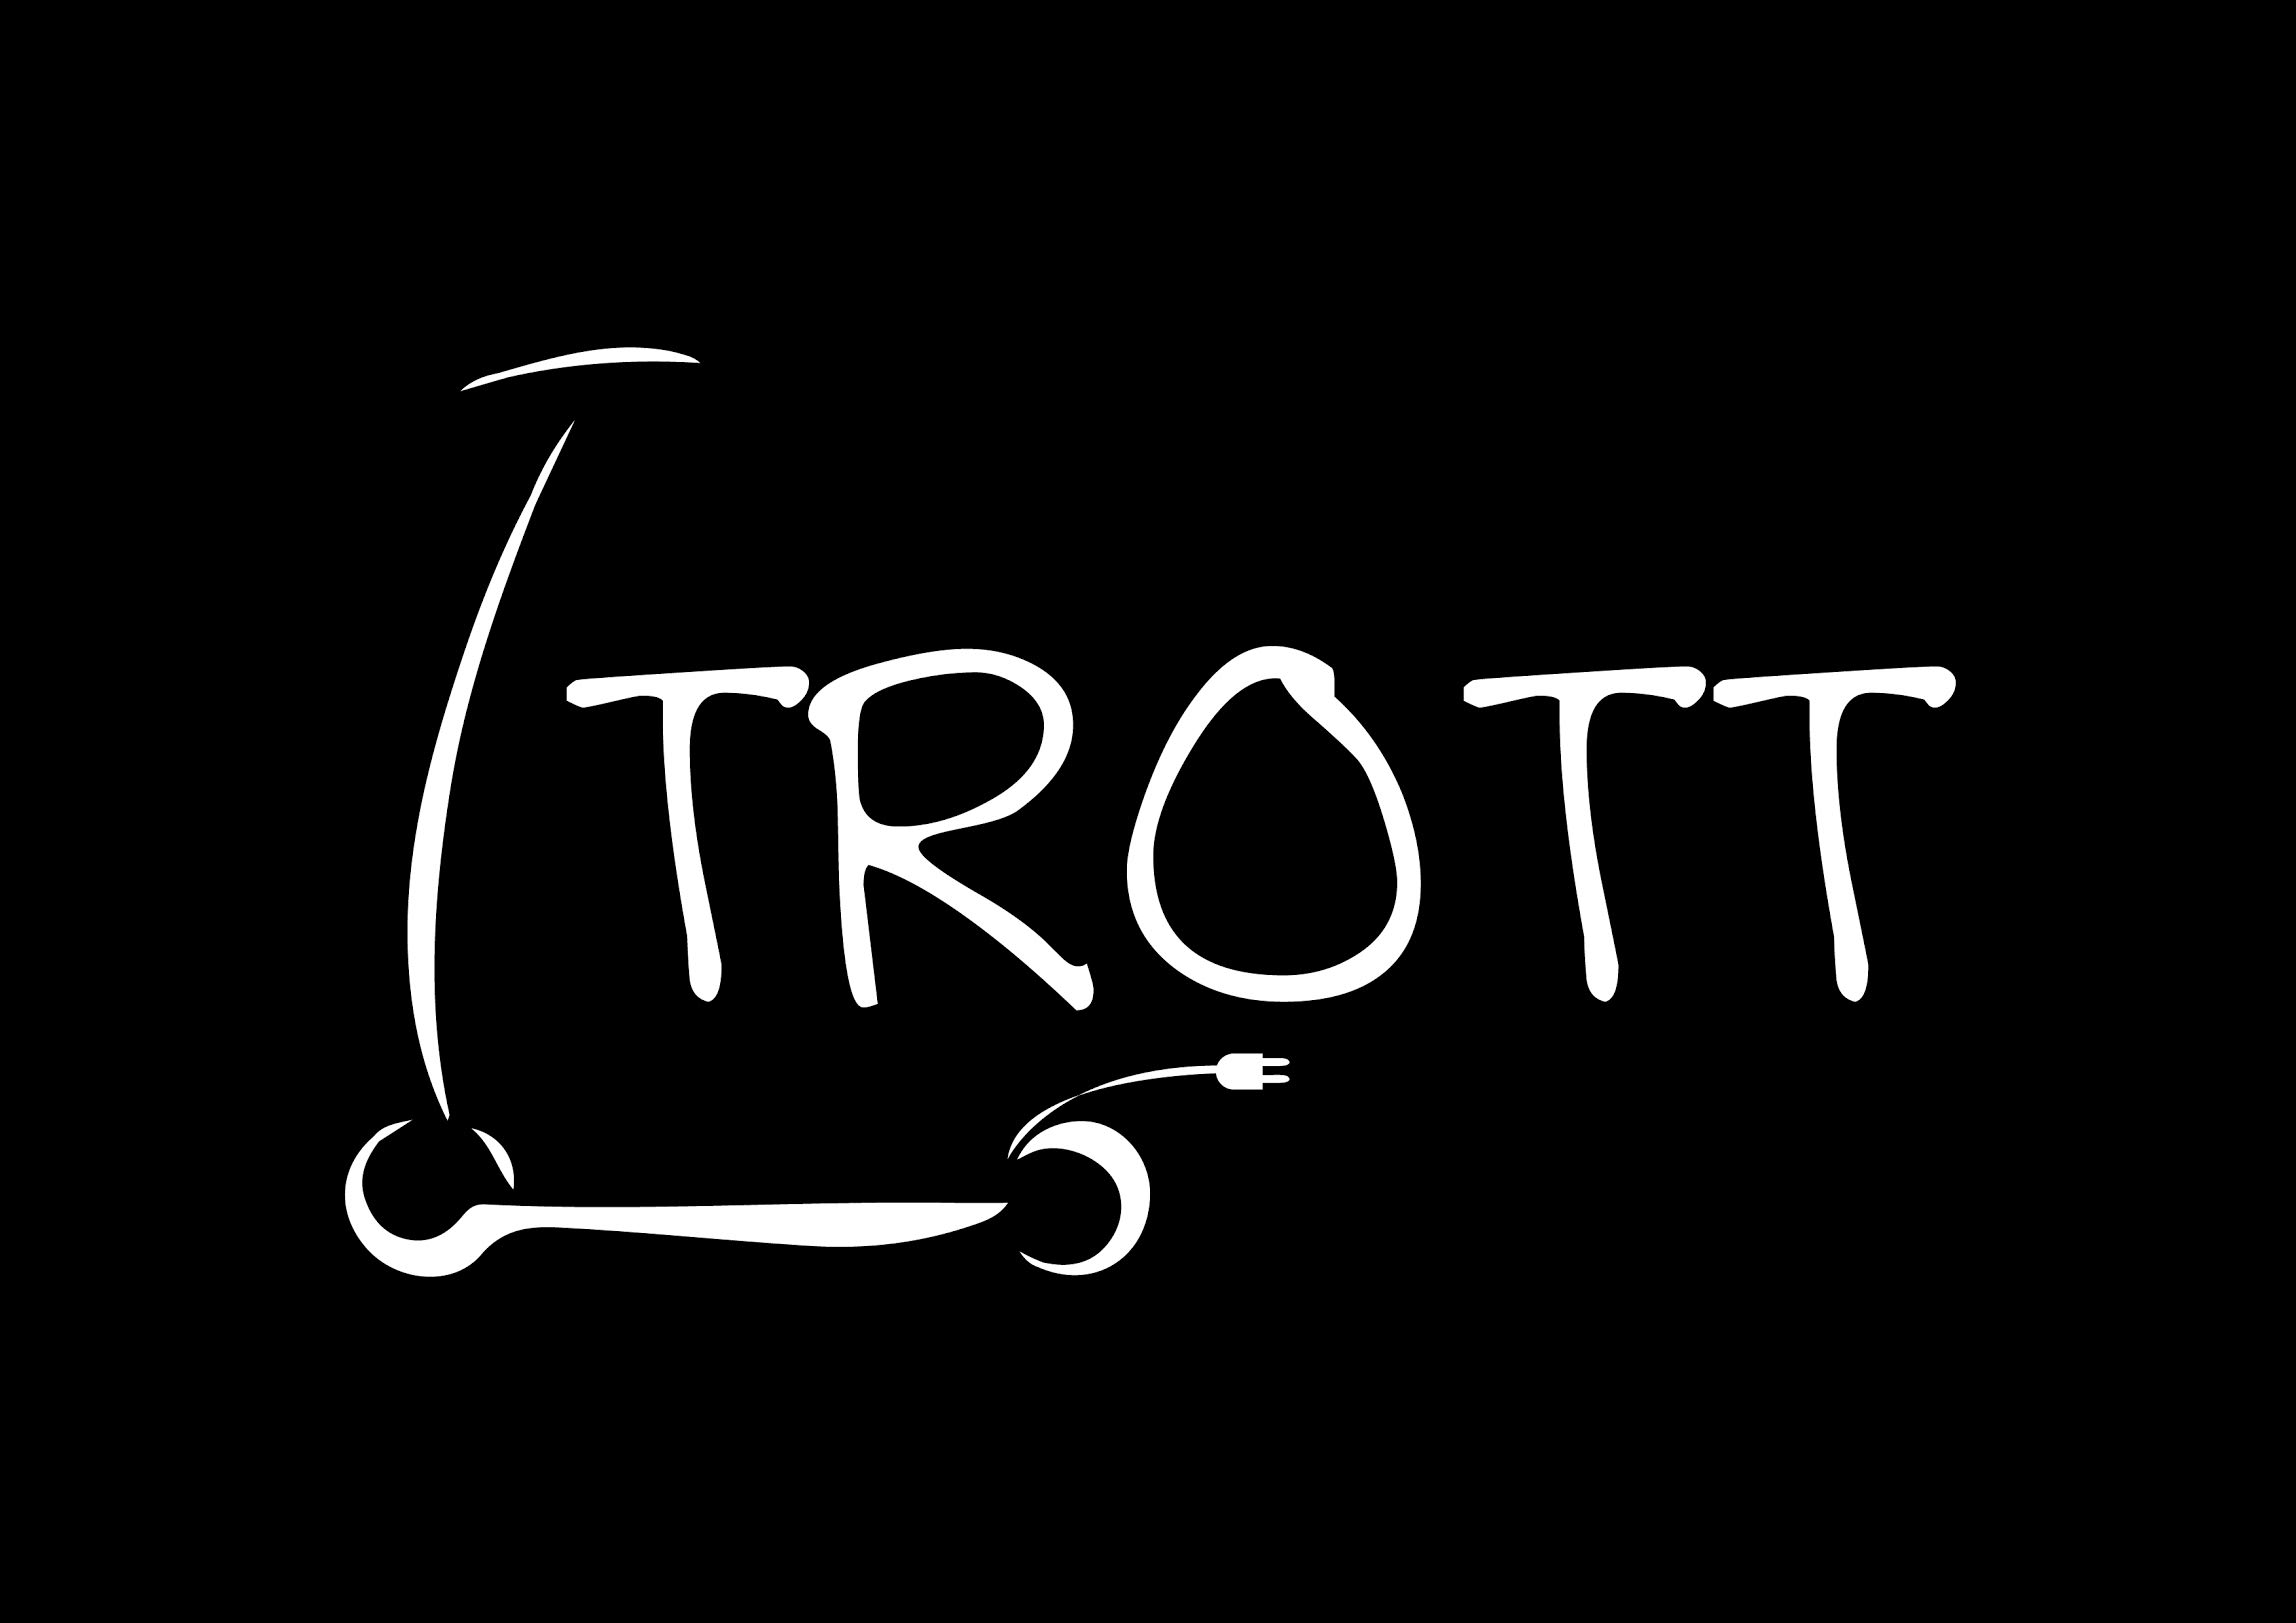 Ltrott